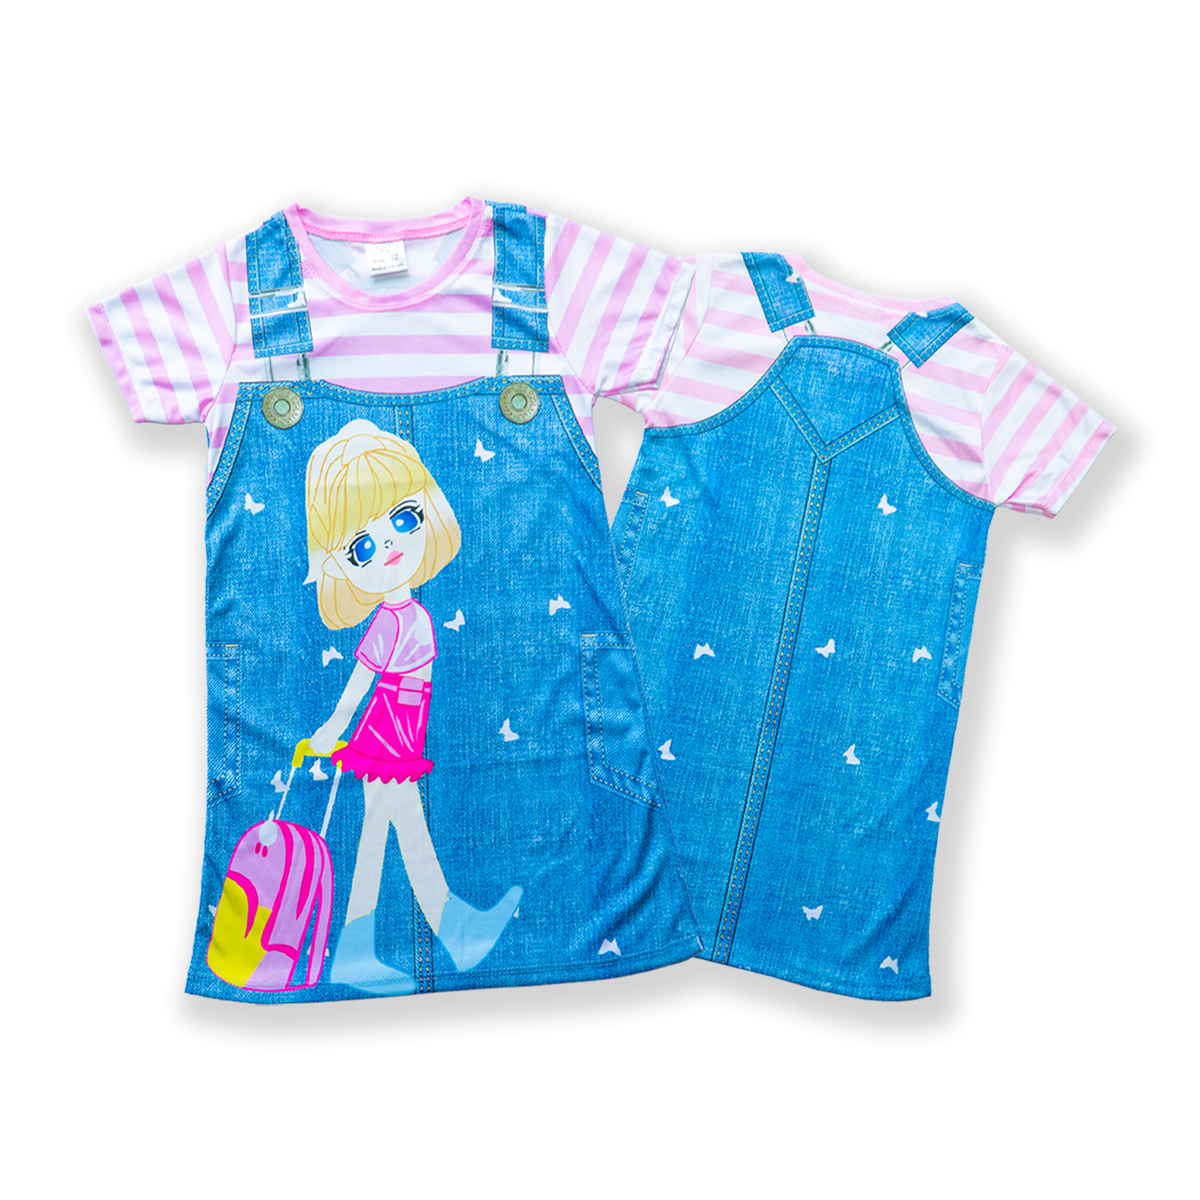 Váy bé gái giả yếm in hình 3D họa tiết vải thun hiệu MIMYKID, đầm cho bé - LMTK-V03H2 - Giao màu ngẫu nhiên